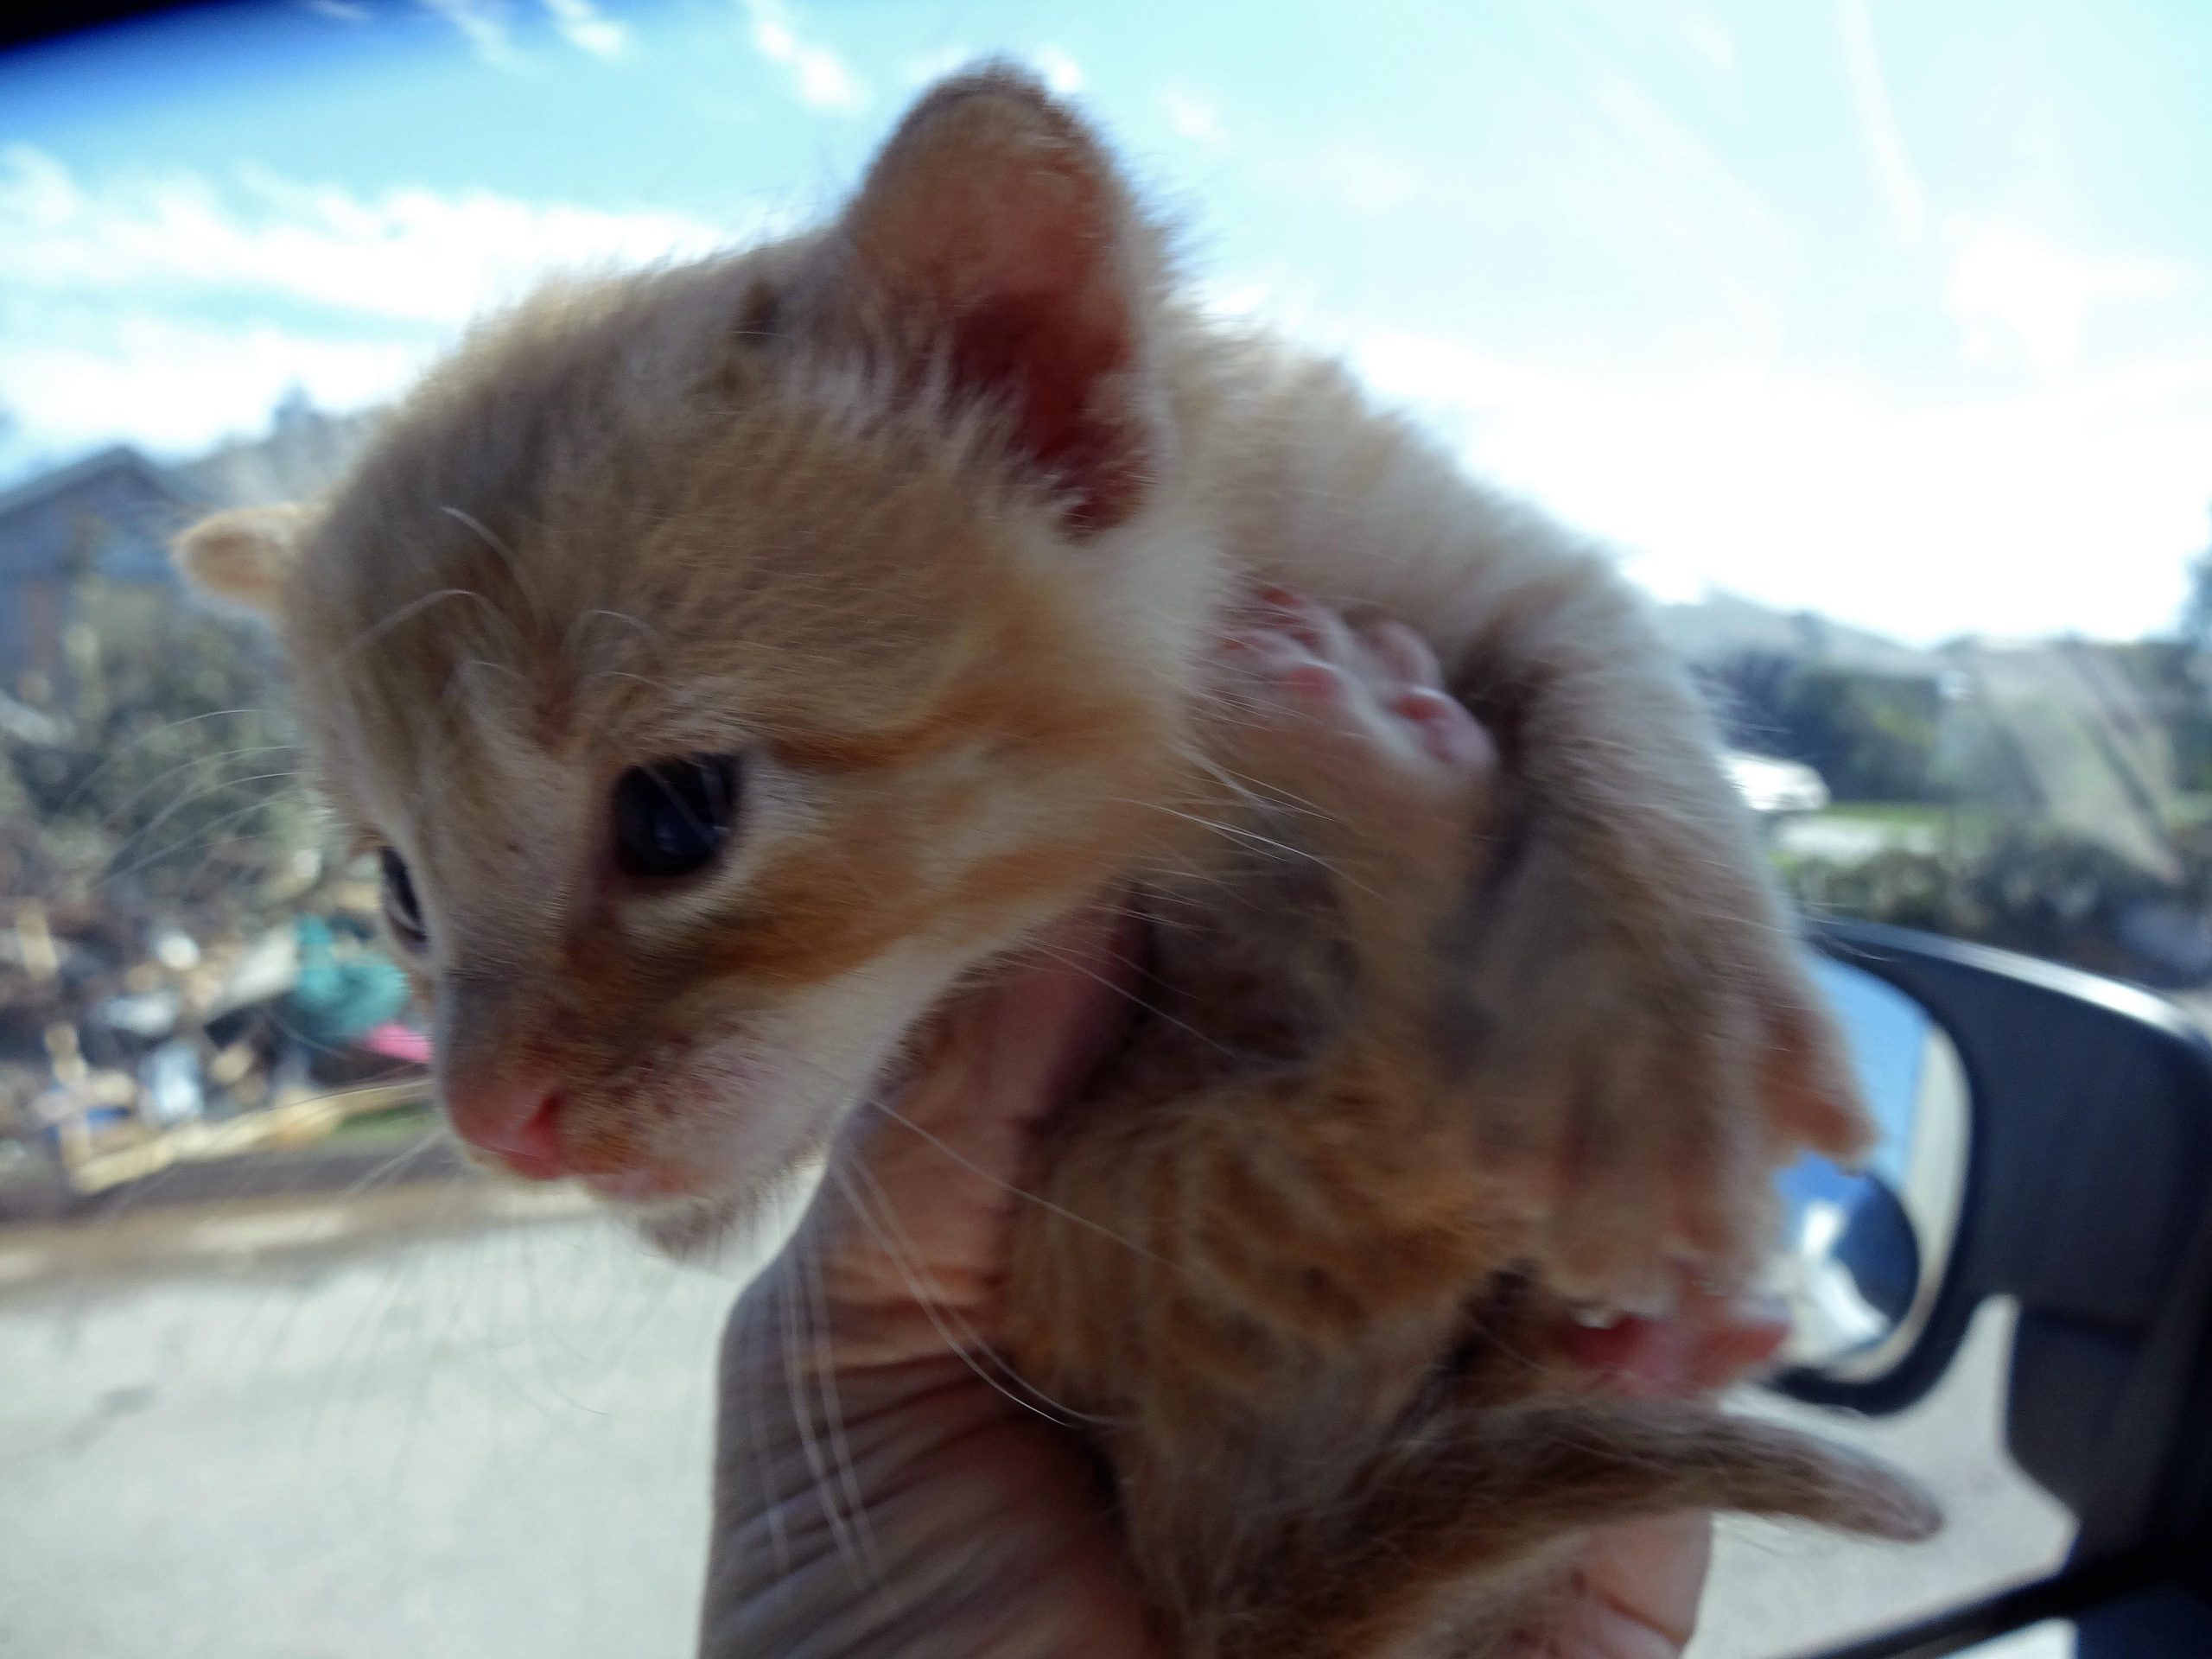 Kitten rescued from rubble